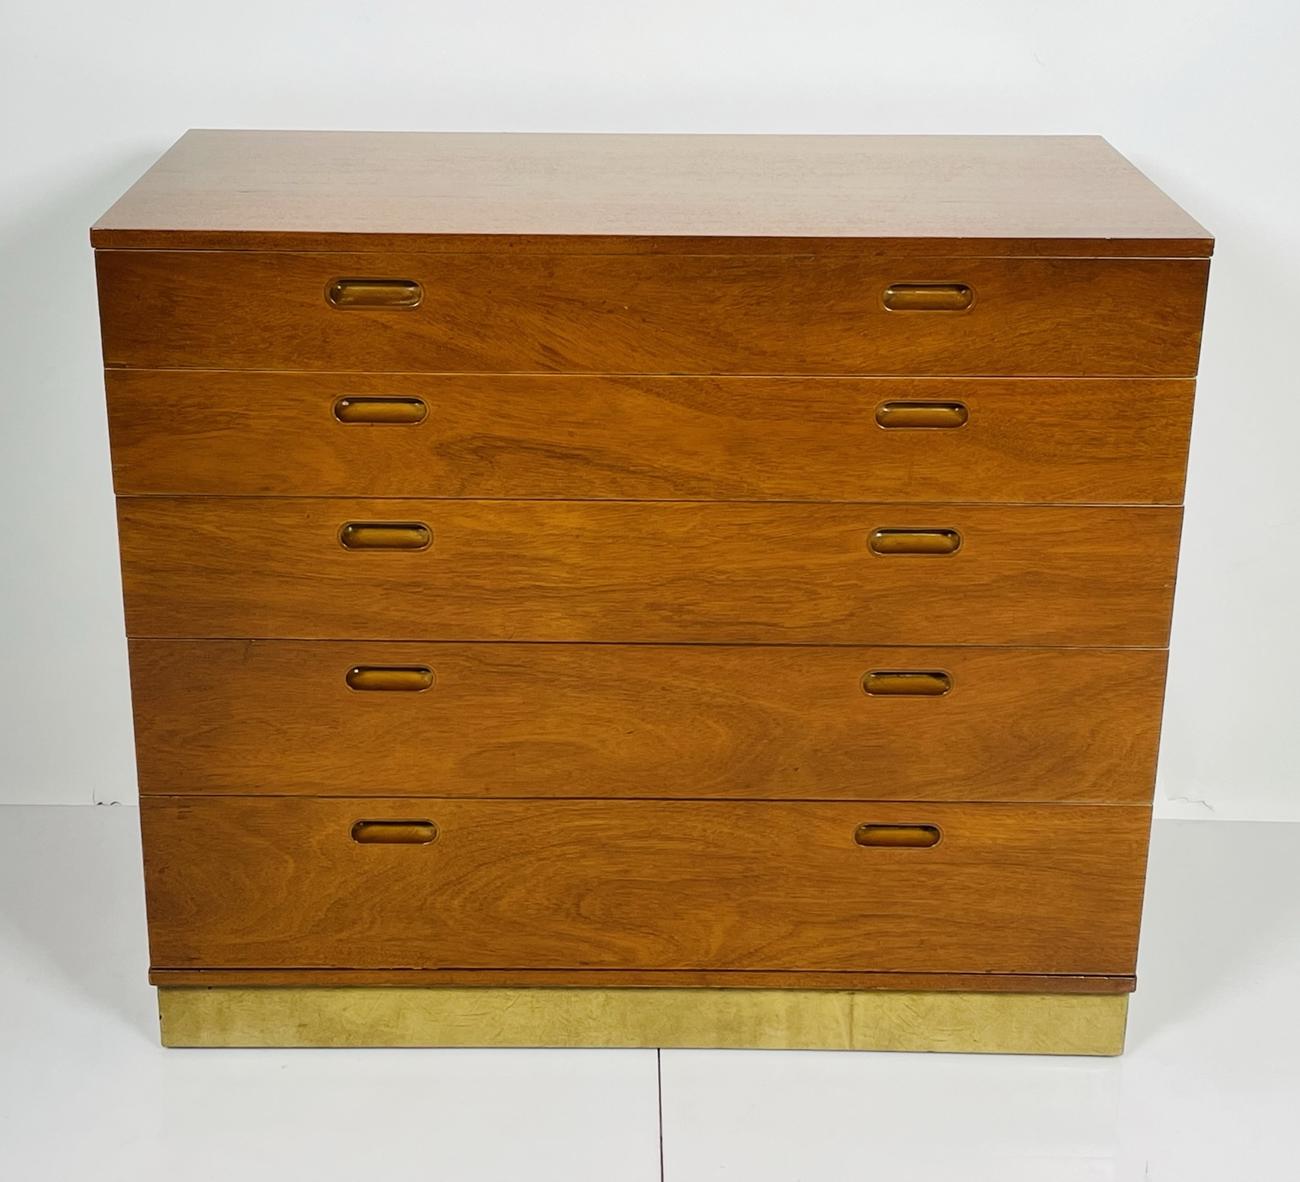 Vintage-Kommode, entworfen von Edward Wormley für Dunbar.
Der Schrank hat 4 Schubladen und die oberste Schublade lässt sich ausziehen und zusammenklappen und kann als Sekretär verwendet werden, die Rückseite der Schublade hat kleine Fächer für